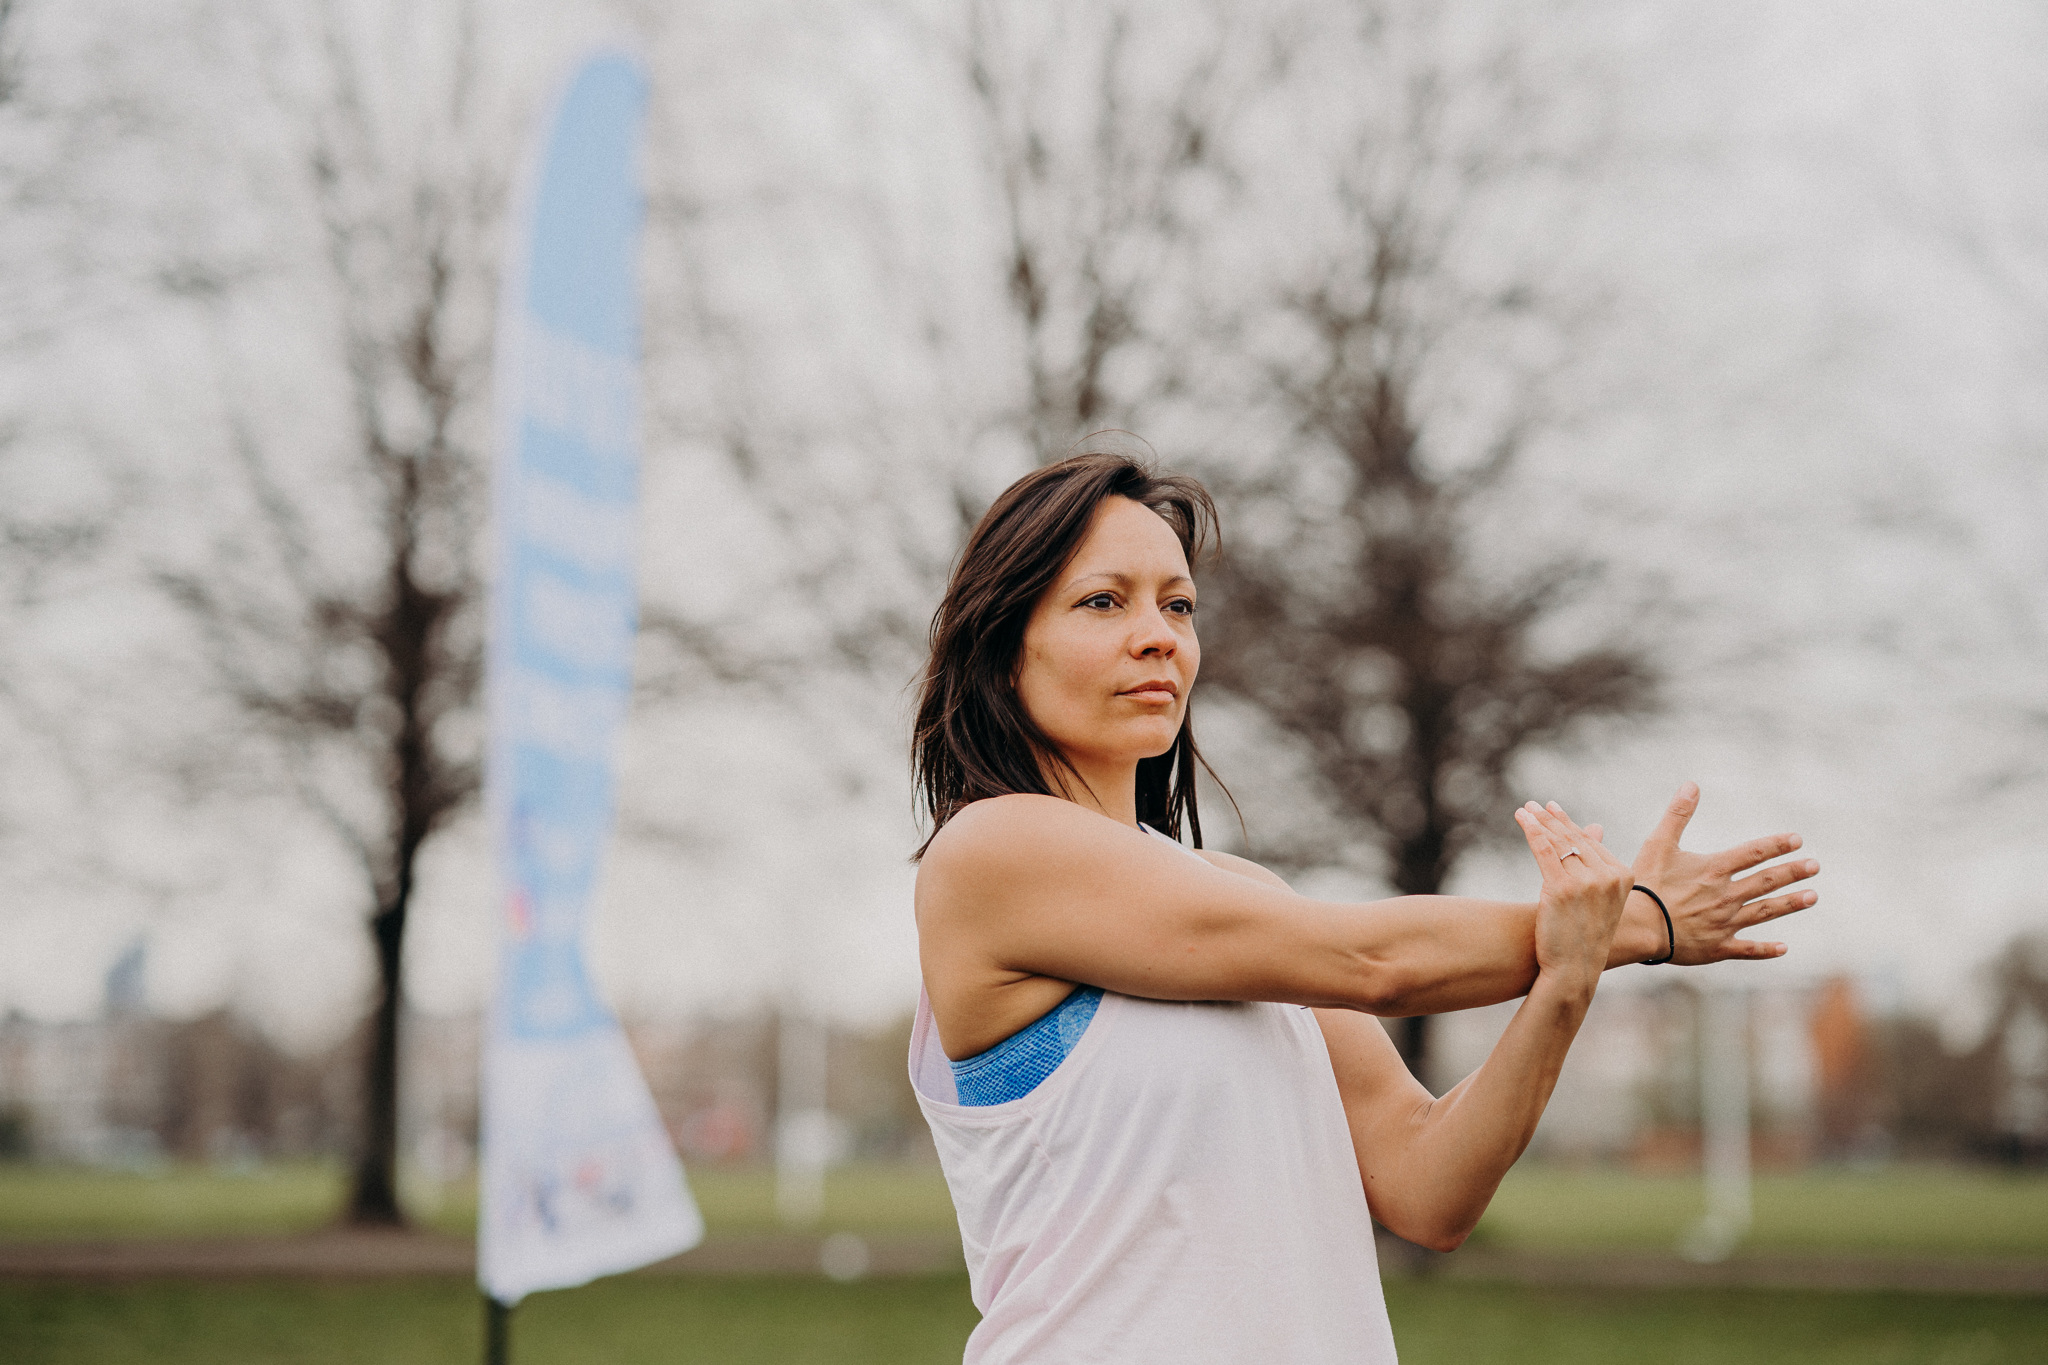 Meet a BUA fitness partner – Sarah Aarons